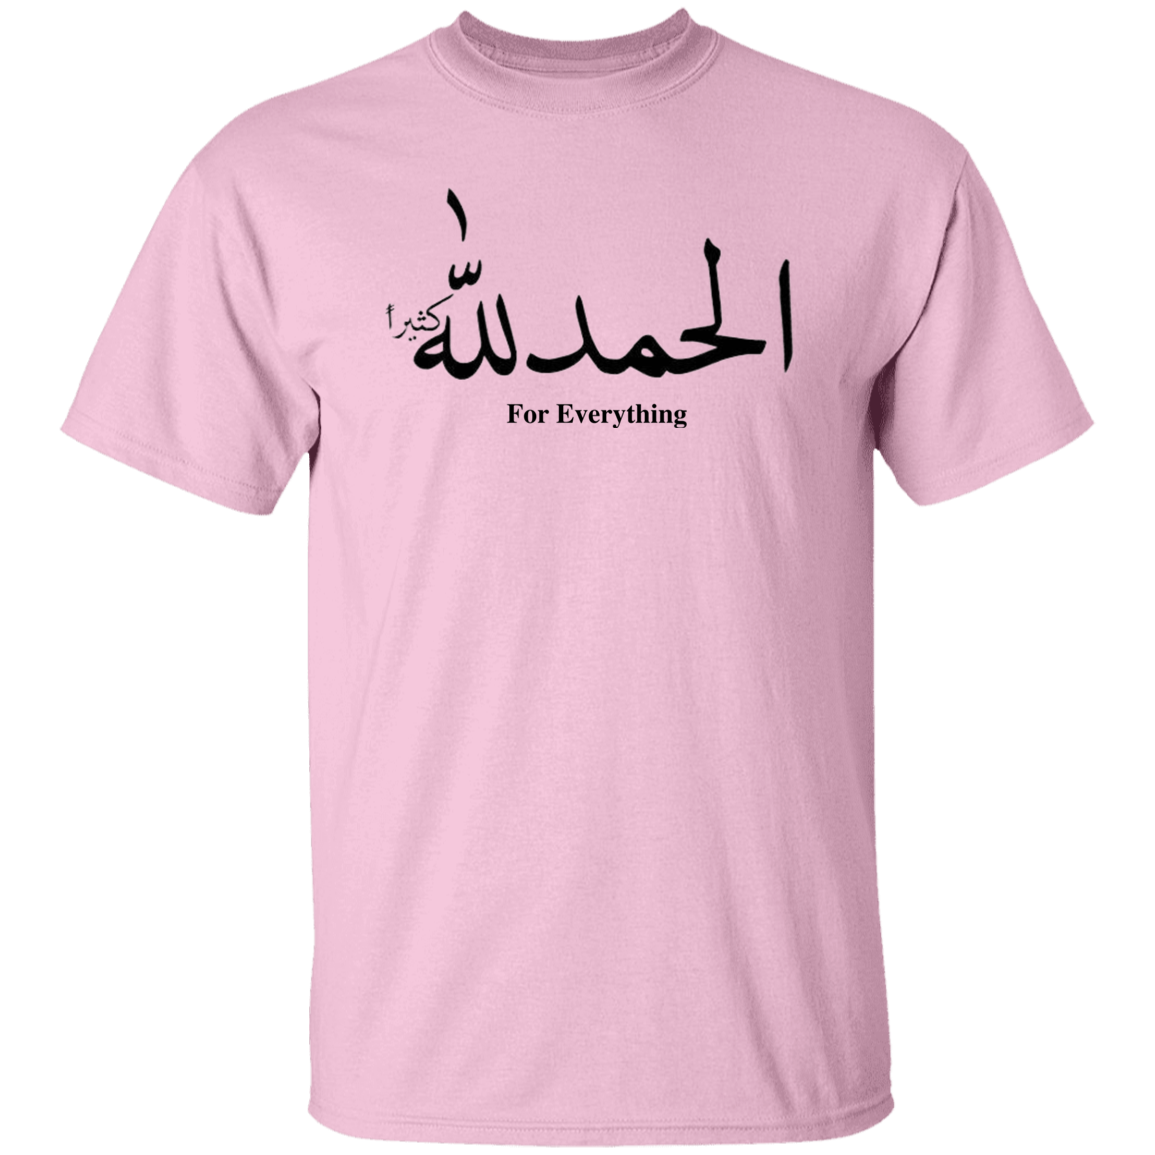 Alhamdulillah  5.3 oz. T-Shirt